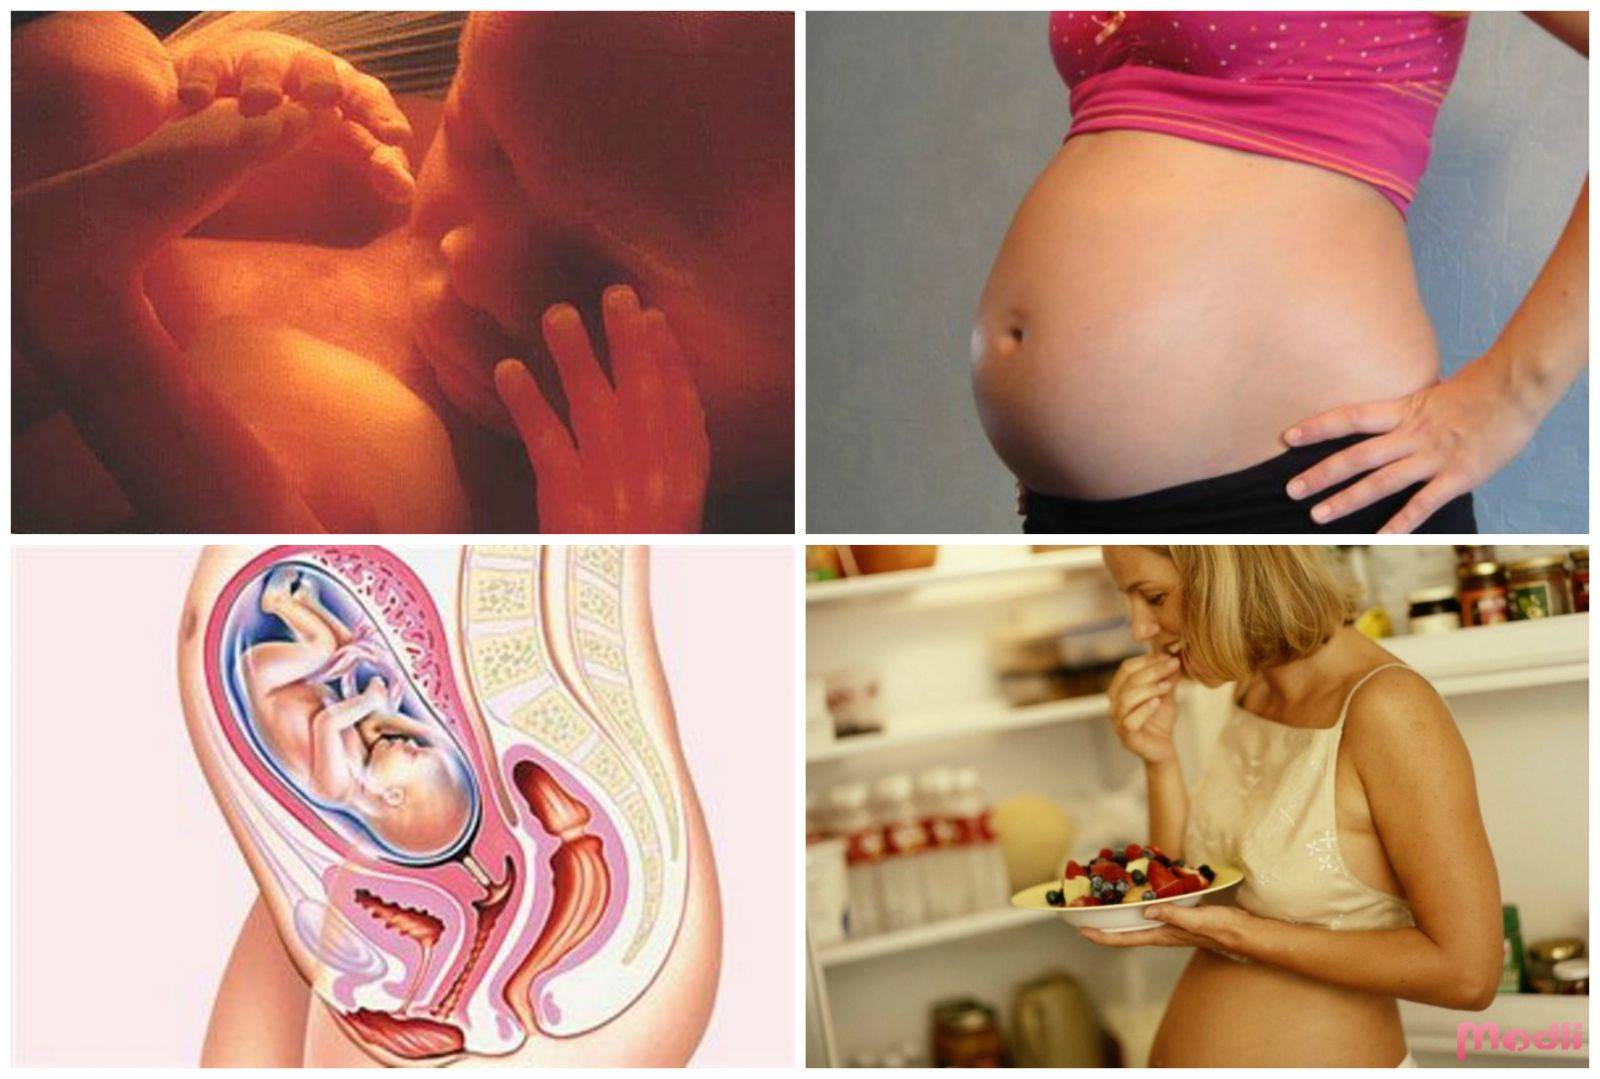 28 неделя беременности: развитие плода, изменения в женском организме, видео, фото узи